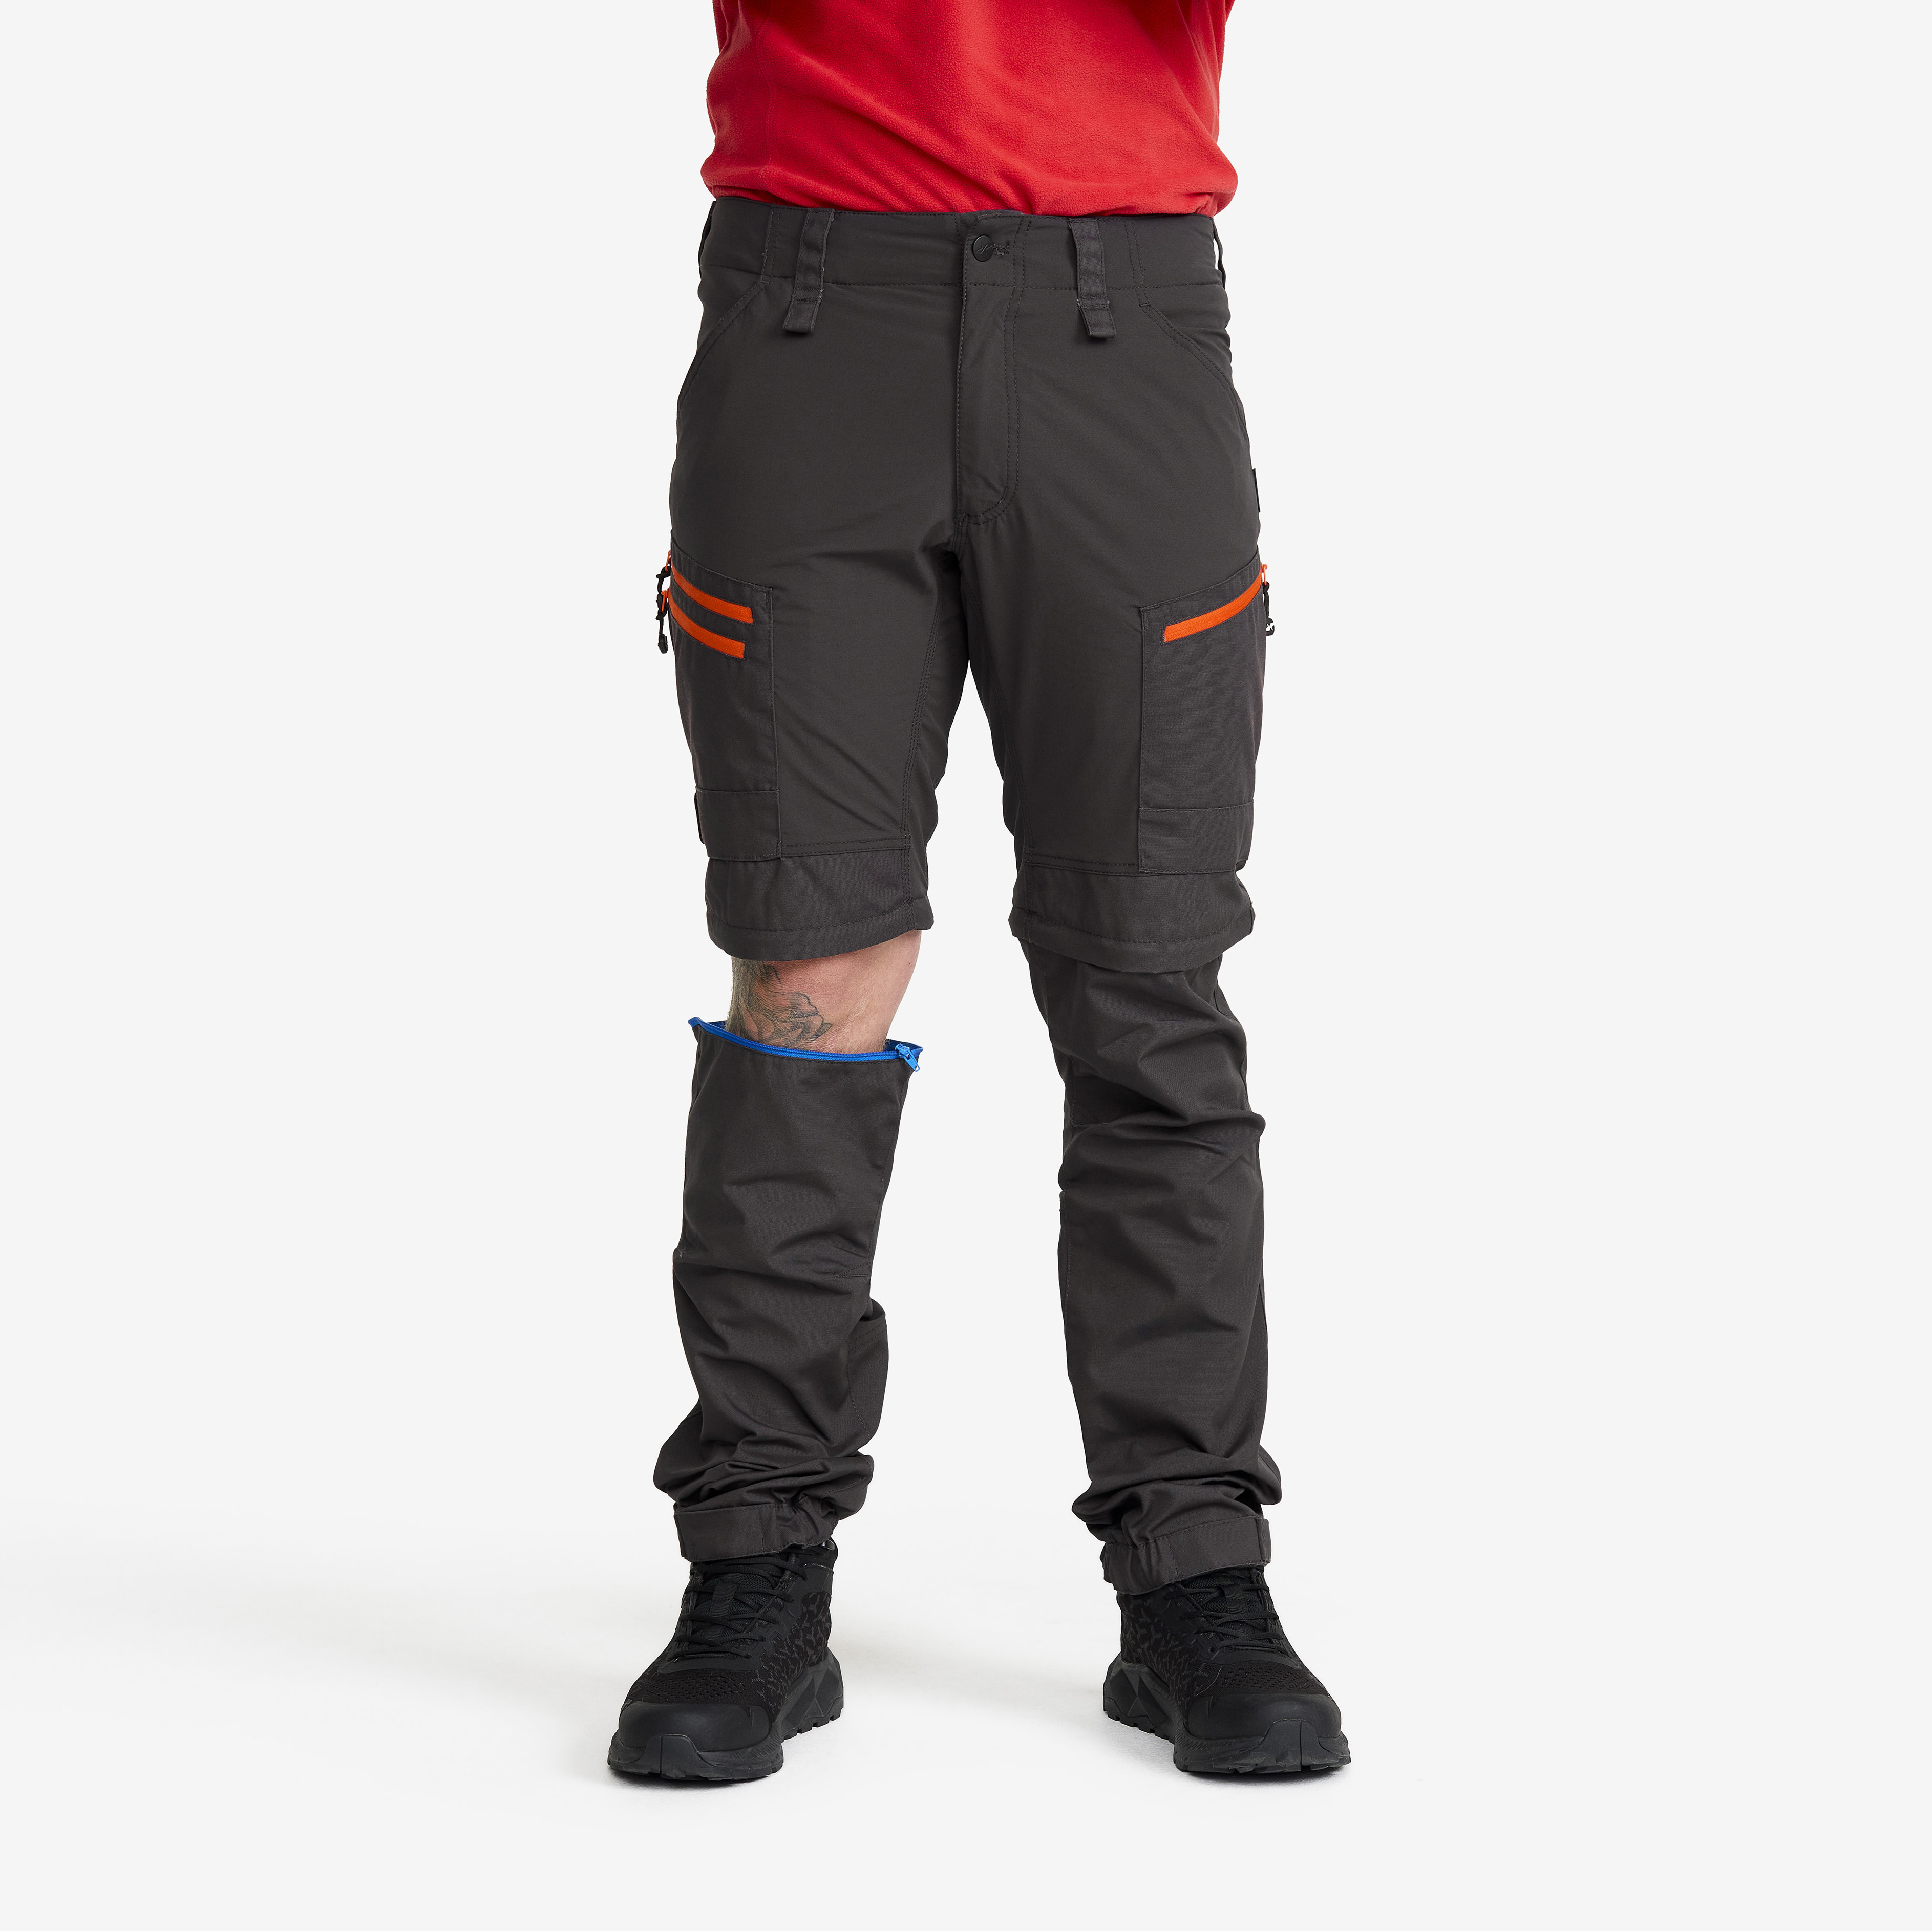 RVRC GP Pro Zip-off turistické kalhoty pro muže v tmavě šedé barvě